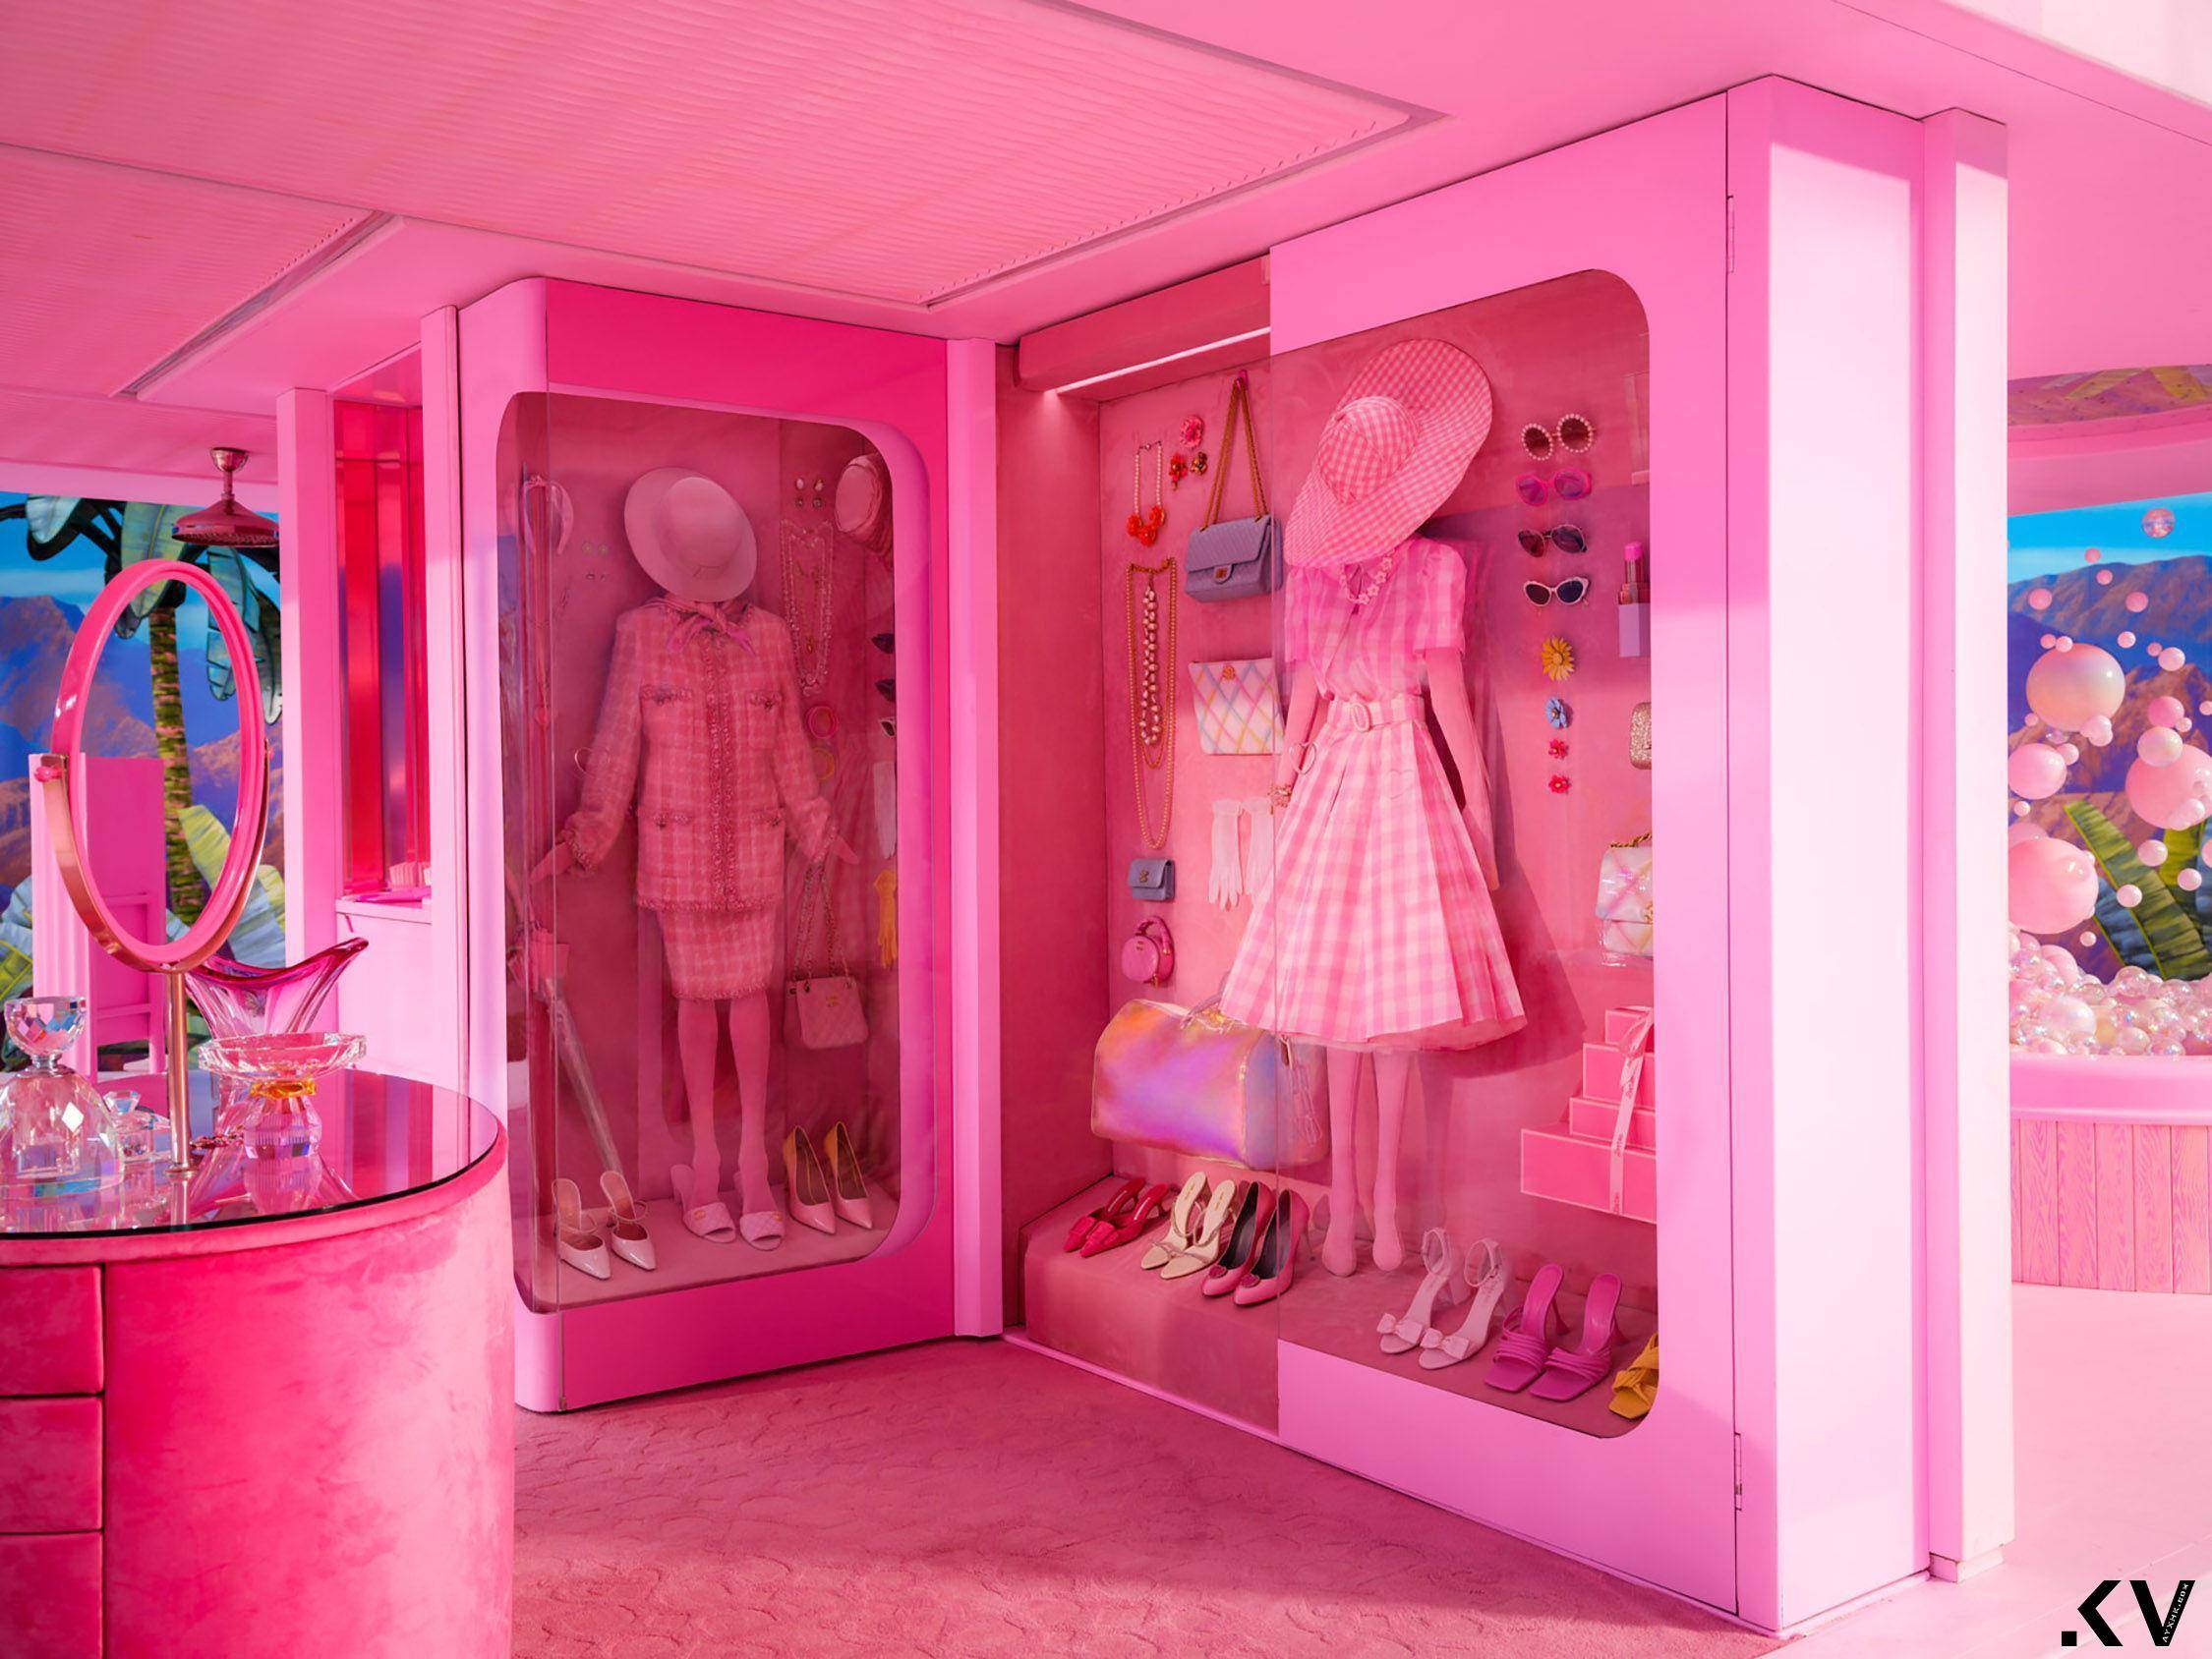 《芭比》衣橱里都是梦幻香奈儿！标志性粉色套装、爱心造型包款爆红 时尚穿搭 图1张